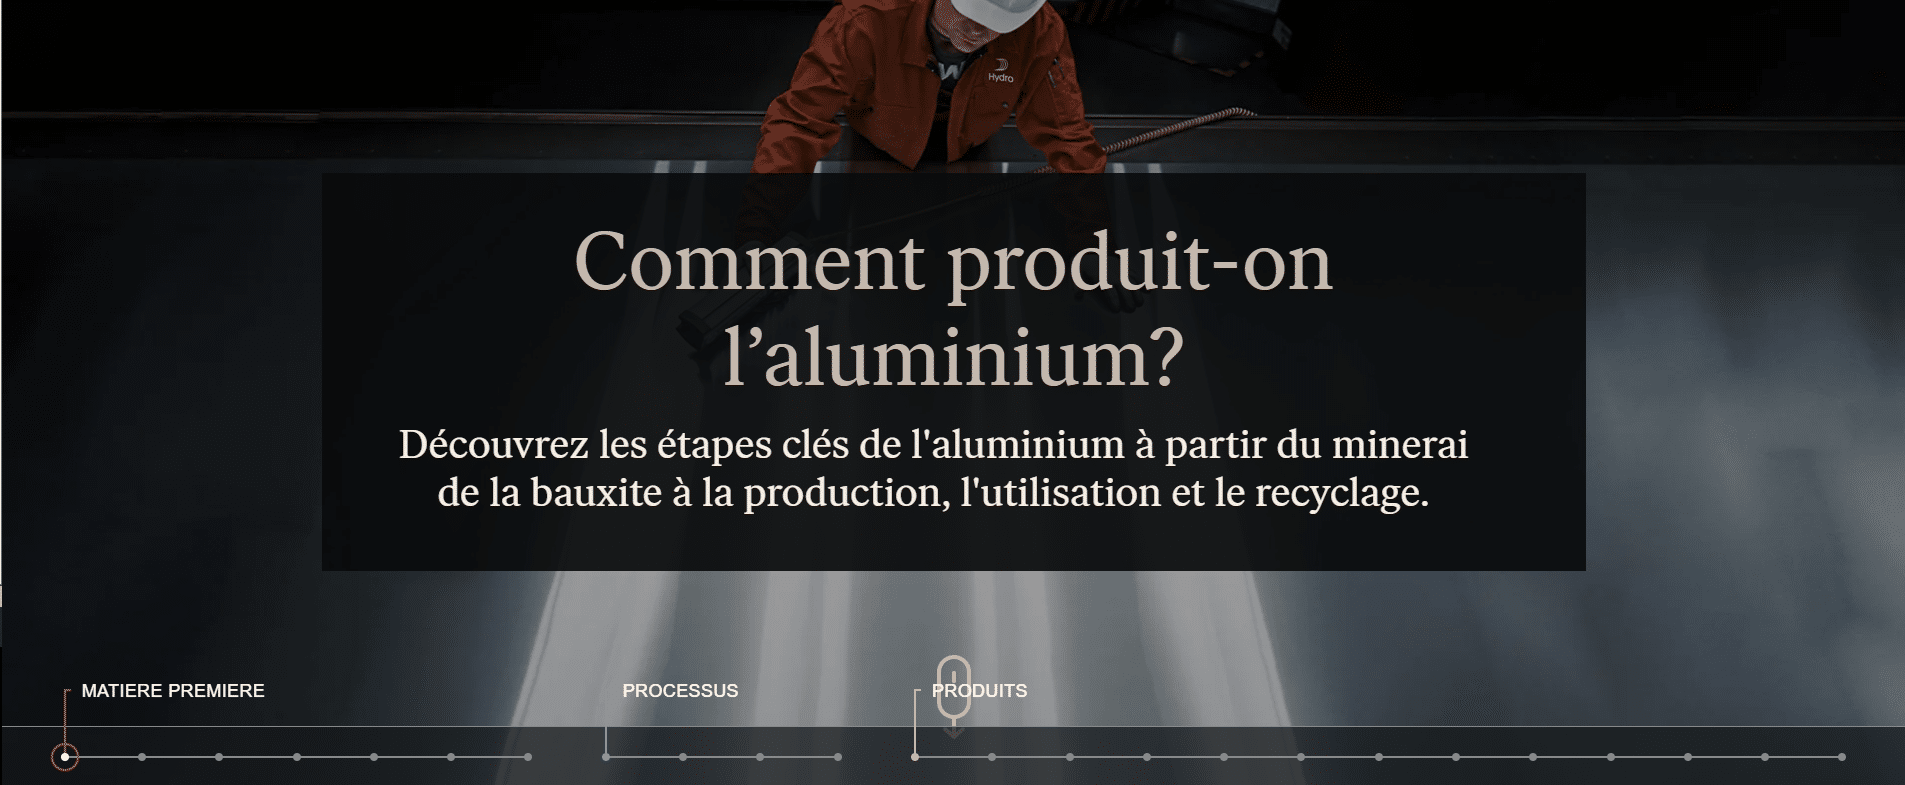 processus de fabrication de l'aluminium du minerai à la production en passant par l'utilisation et le recyclage